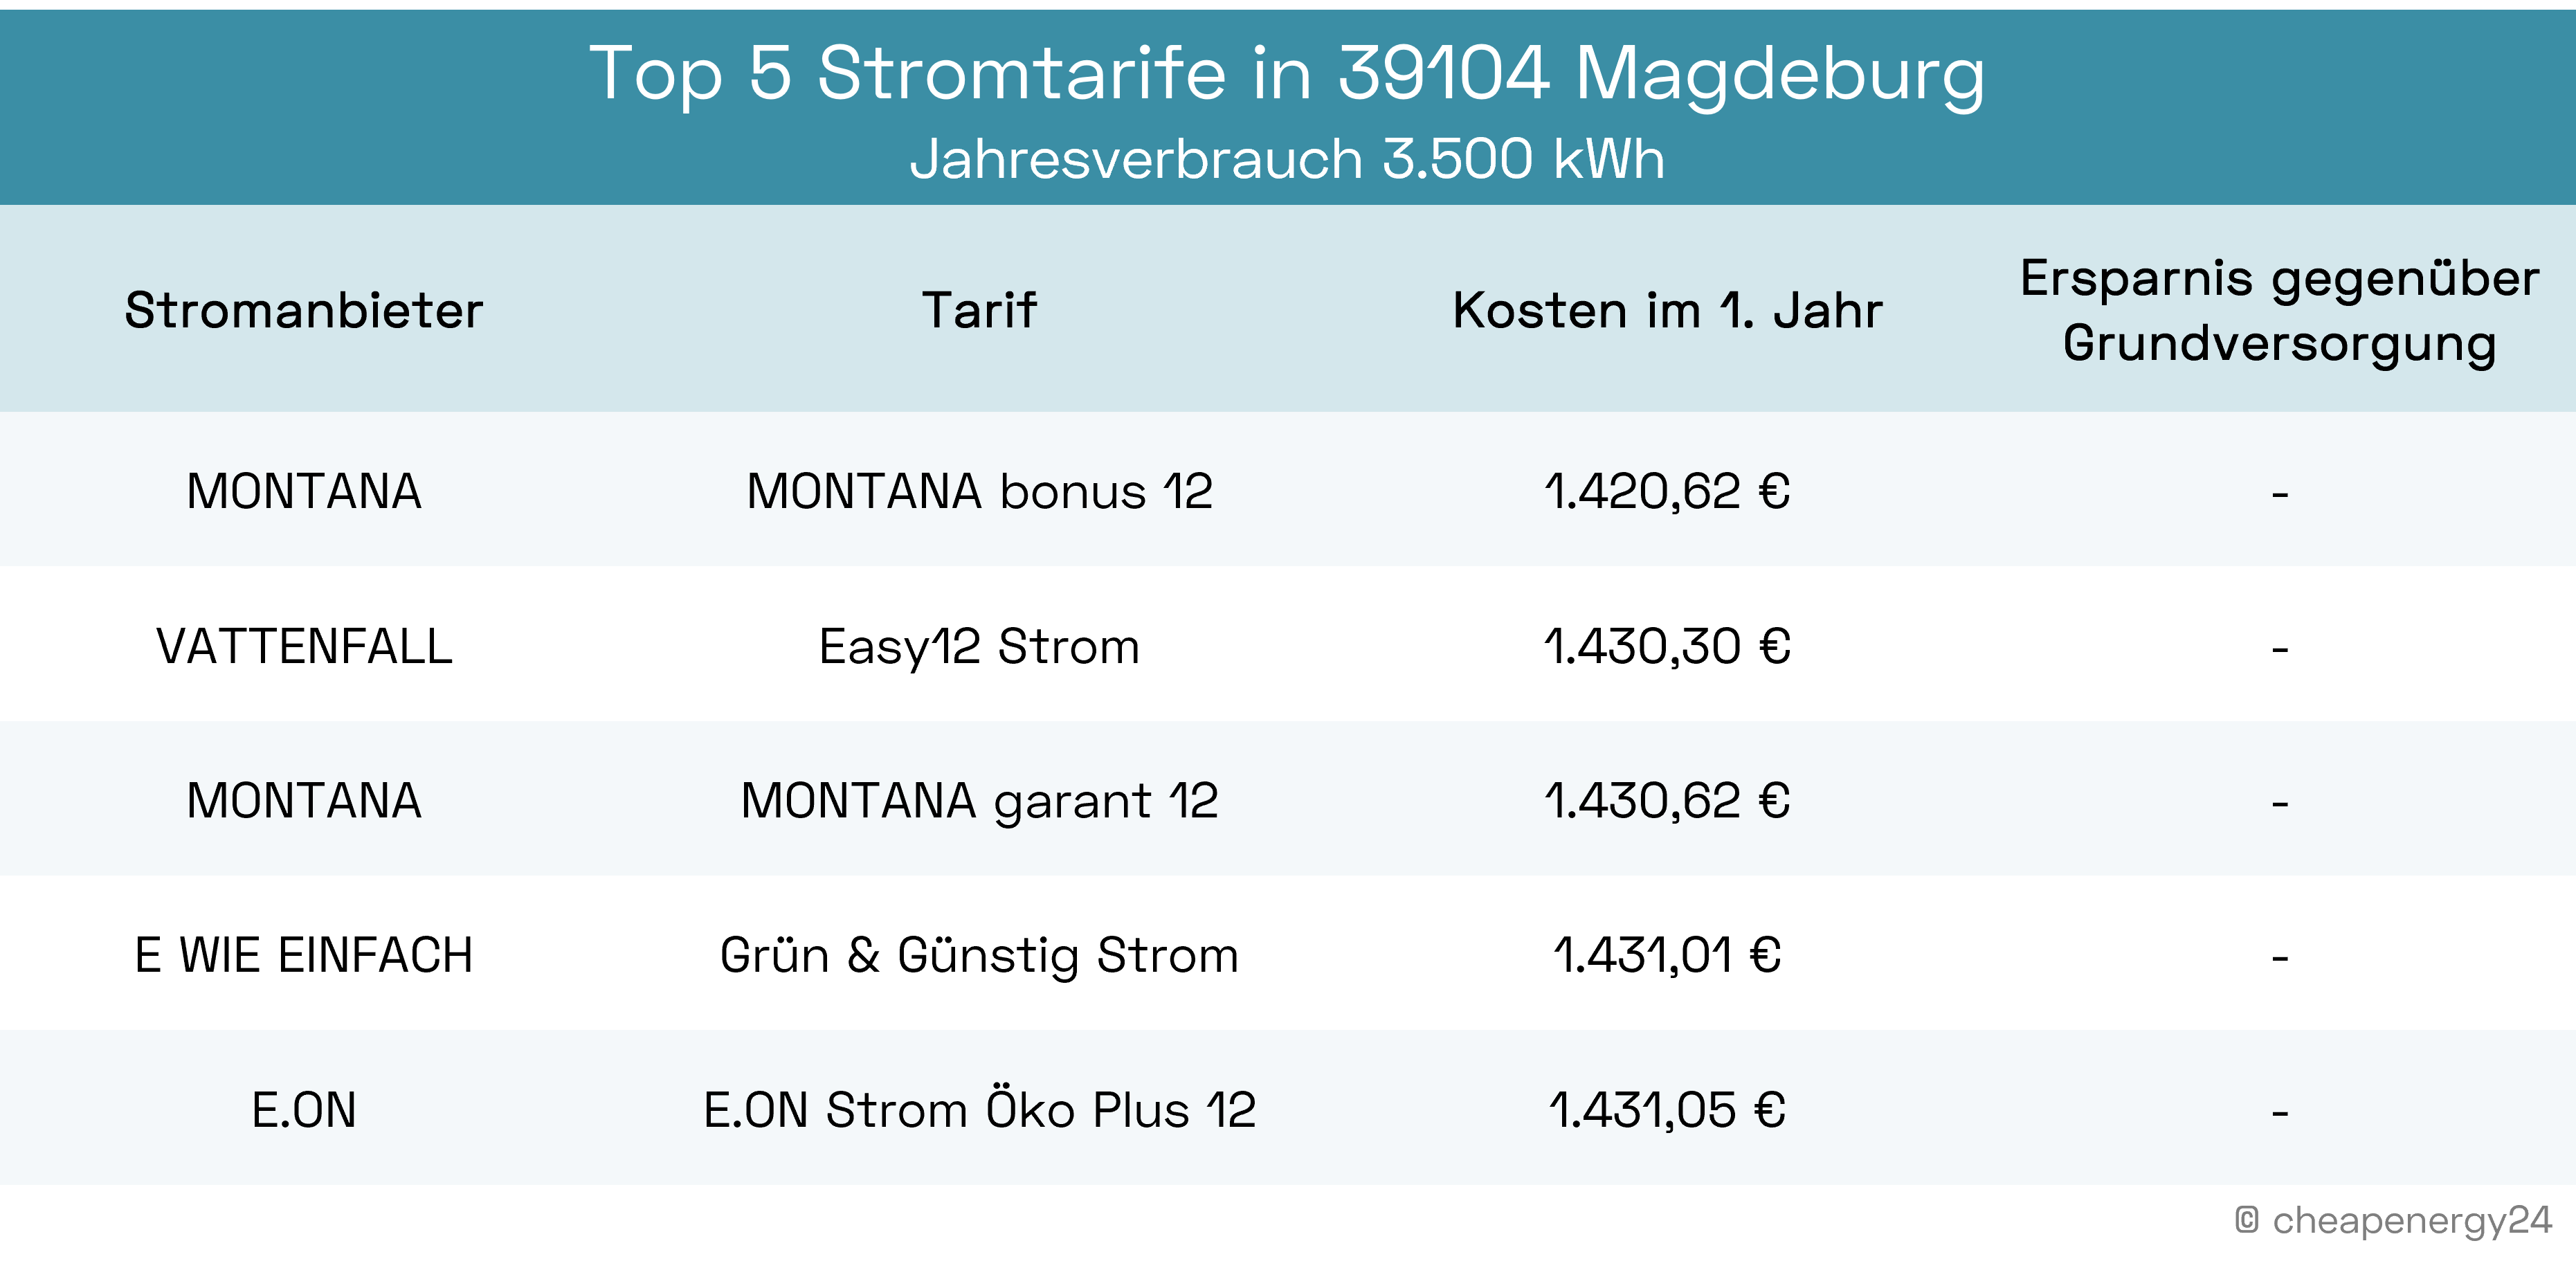 Beste Stromtarife Magdeburg